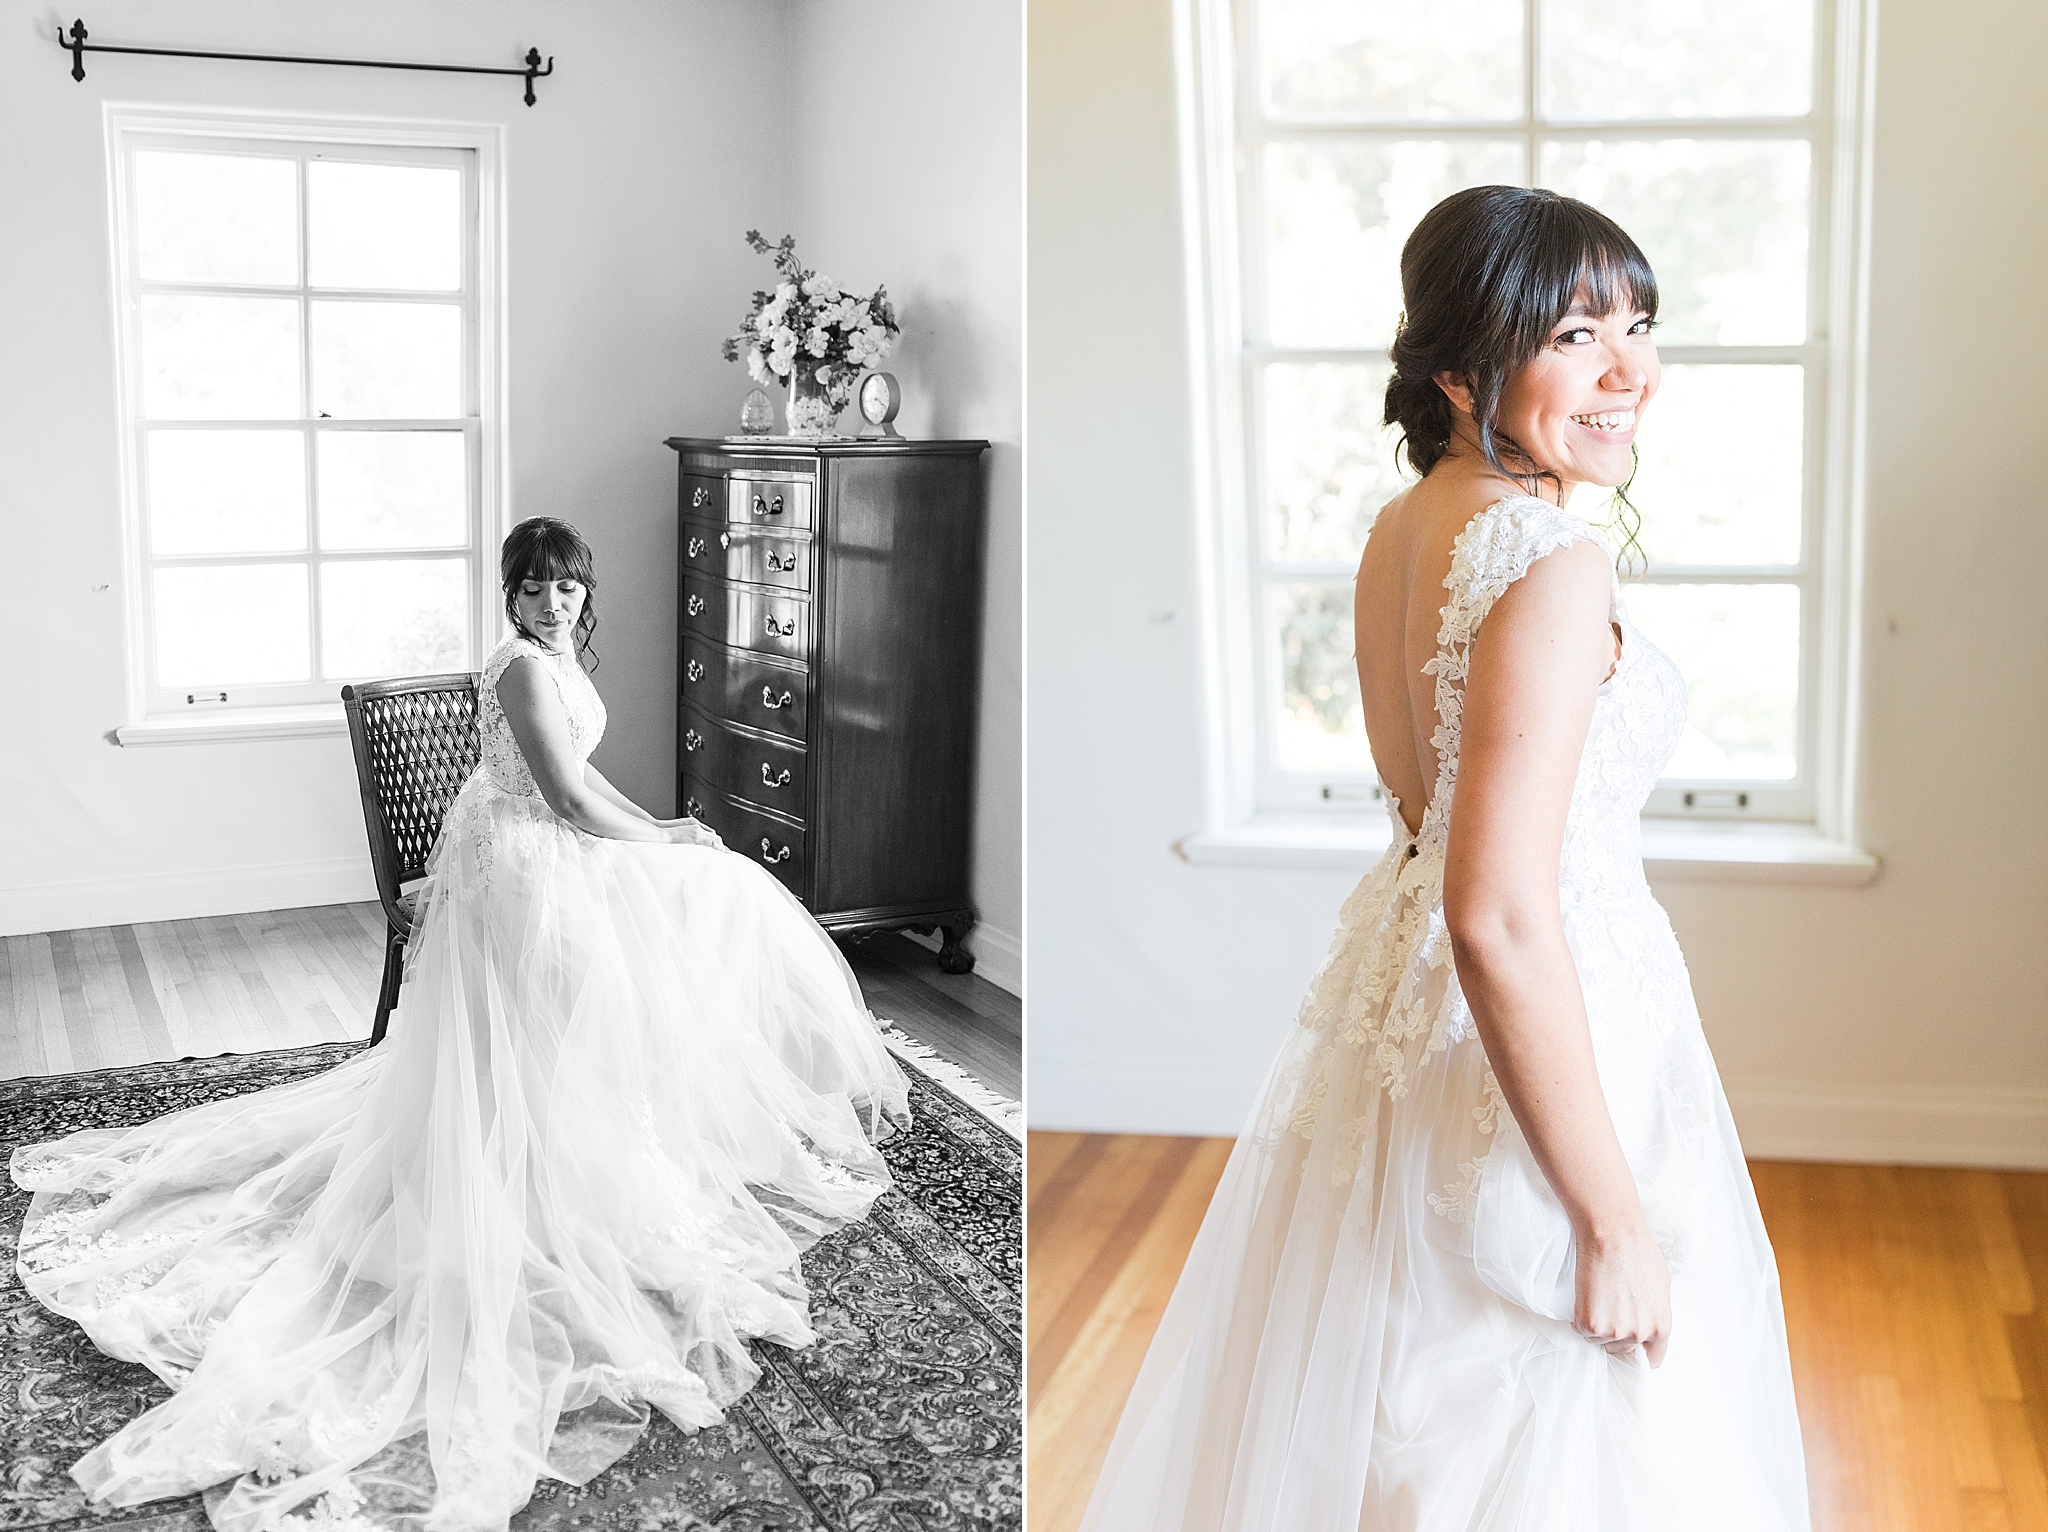 Classic wedding details | Classic Wedding Bride | Getting Ready | bridal portraits